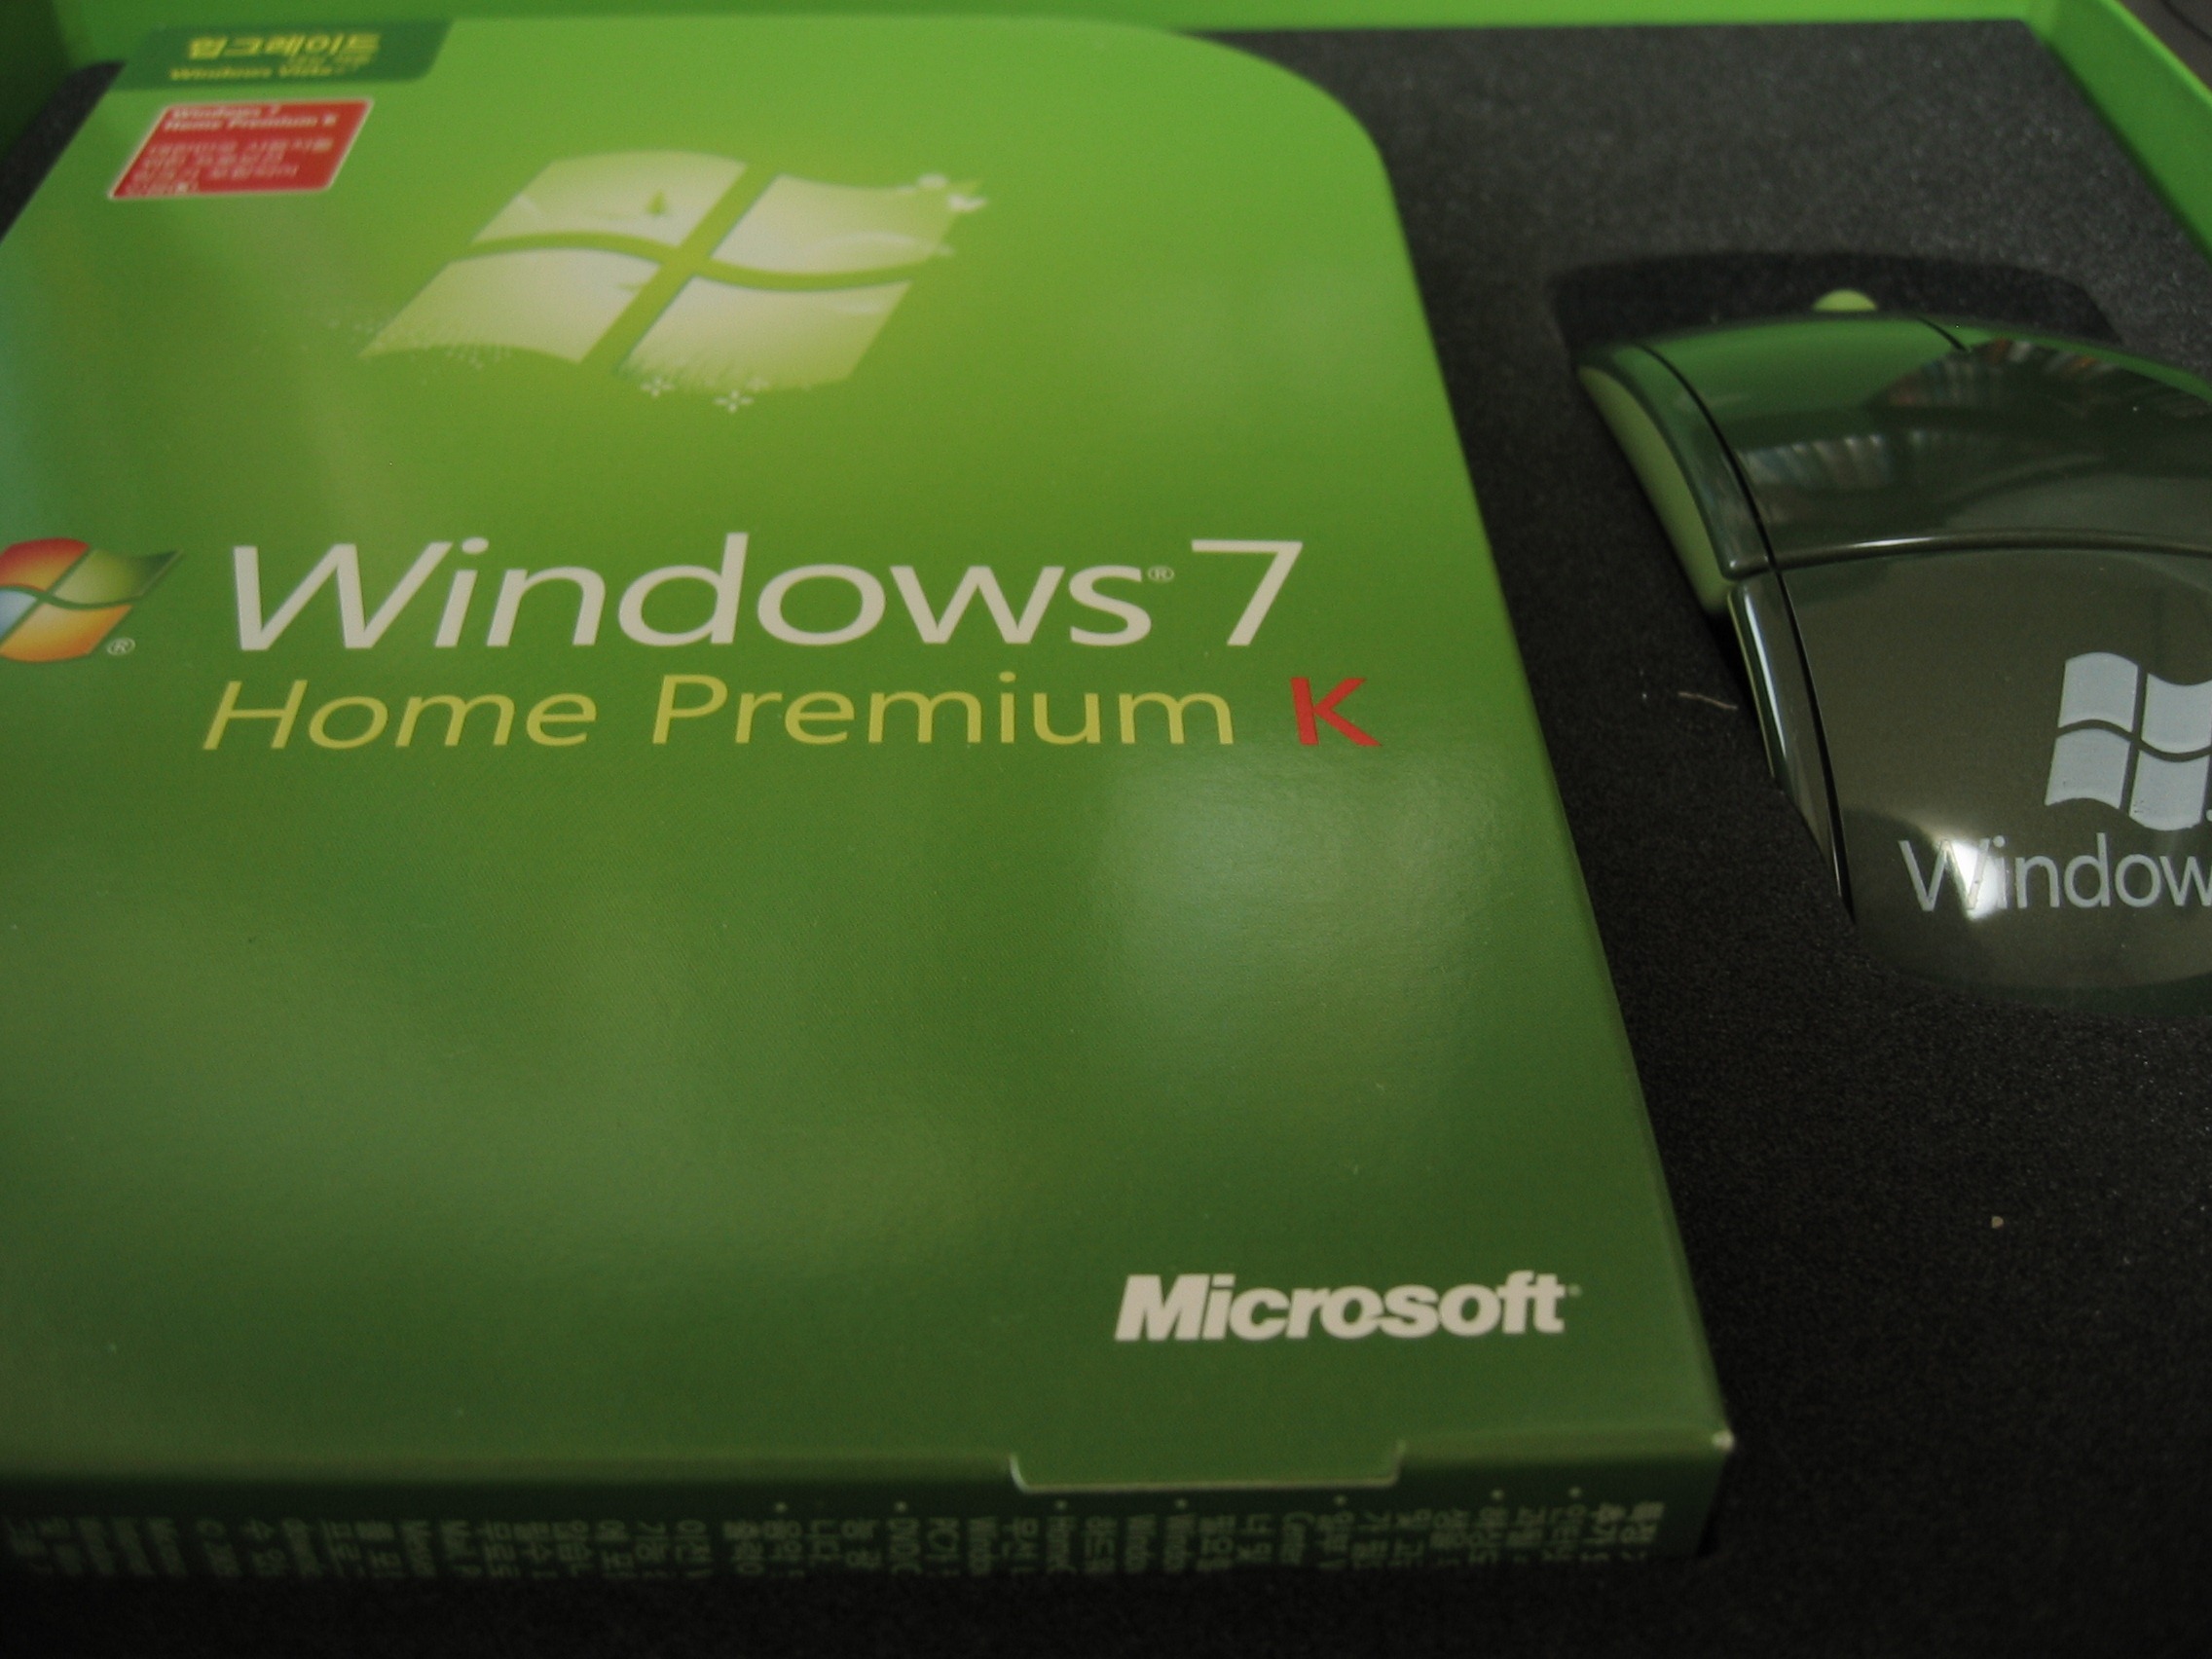 윈도우 7 제품 케이스와 MS 아크 마우스